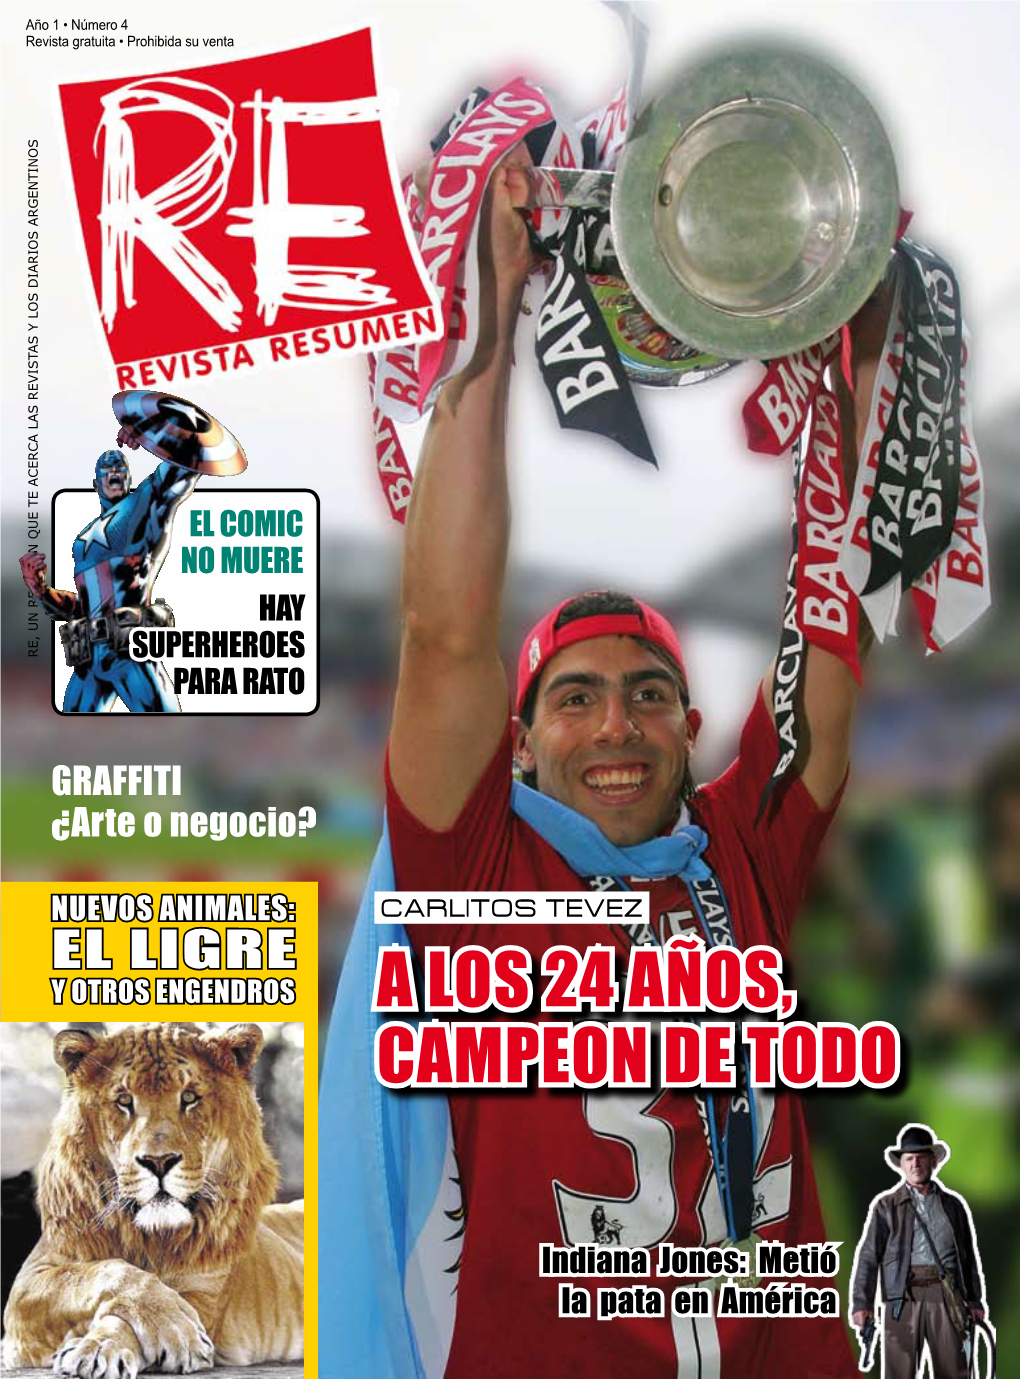 Revista Resumen Año 1 No. 4 Julio 2008